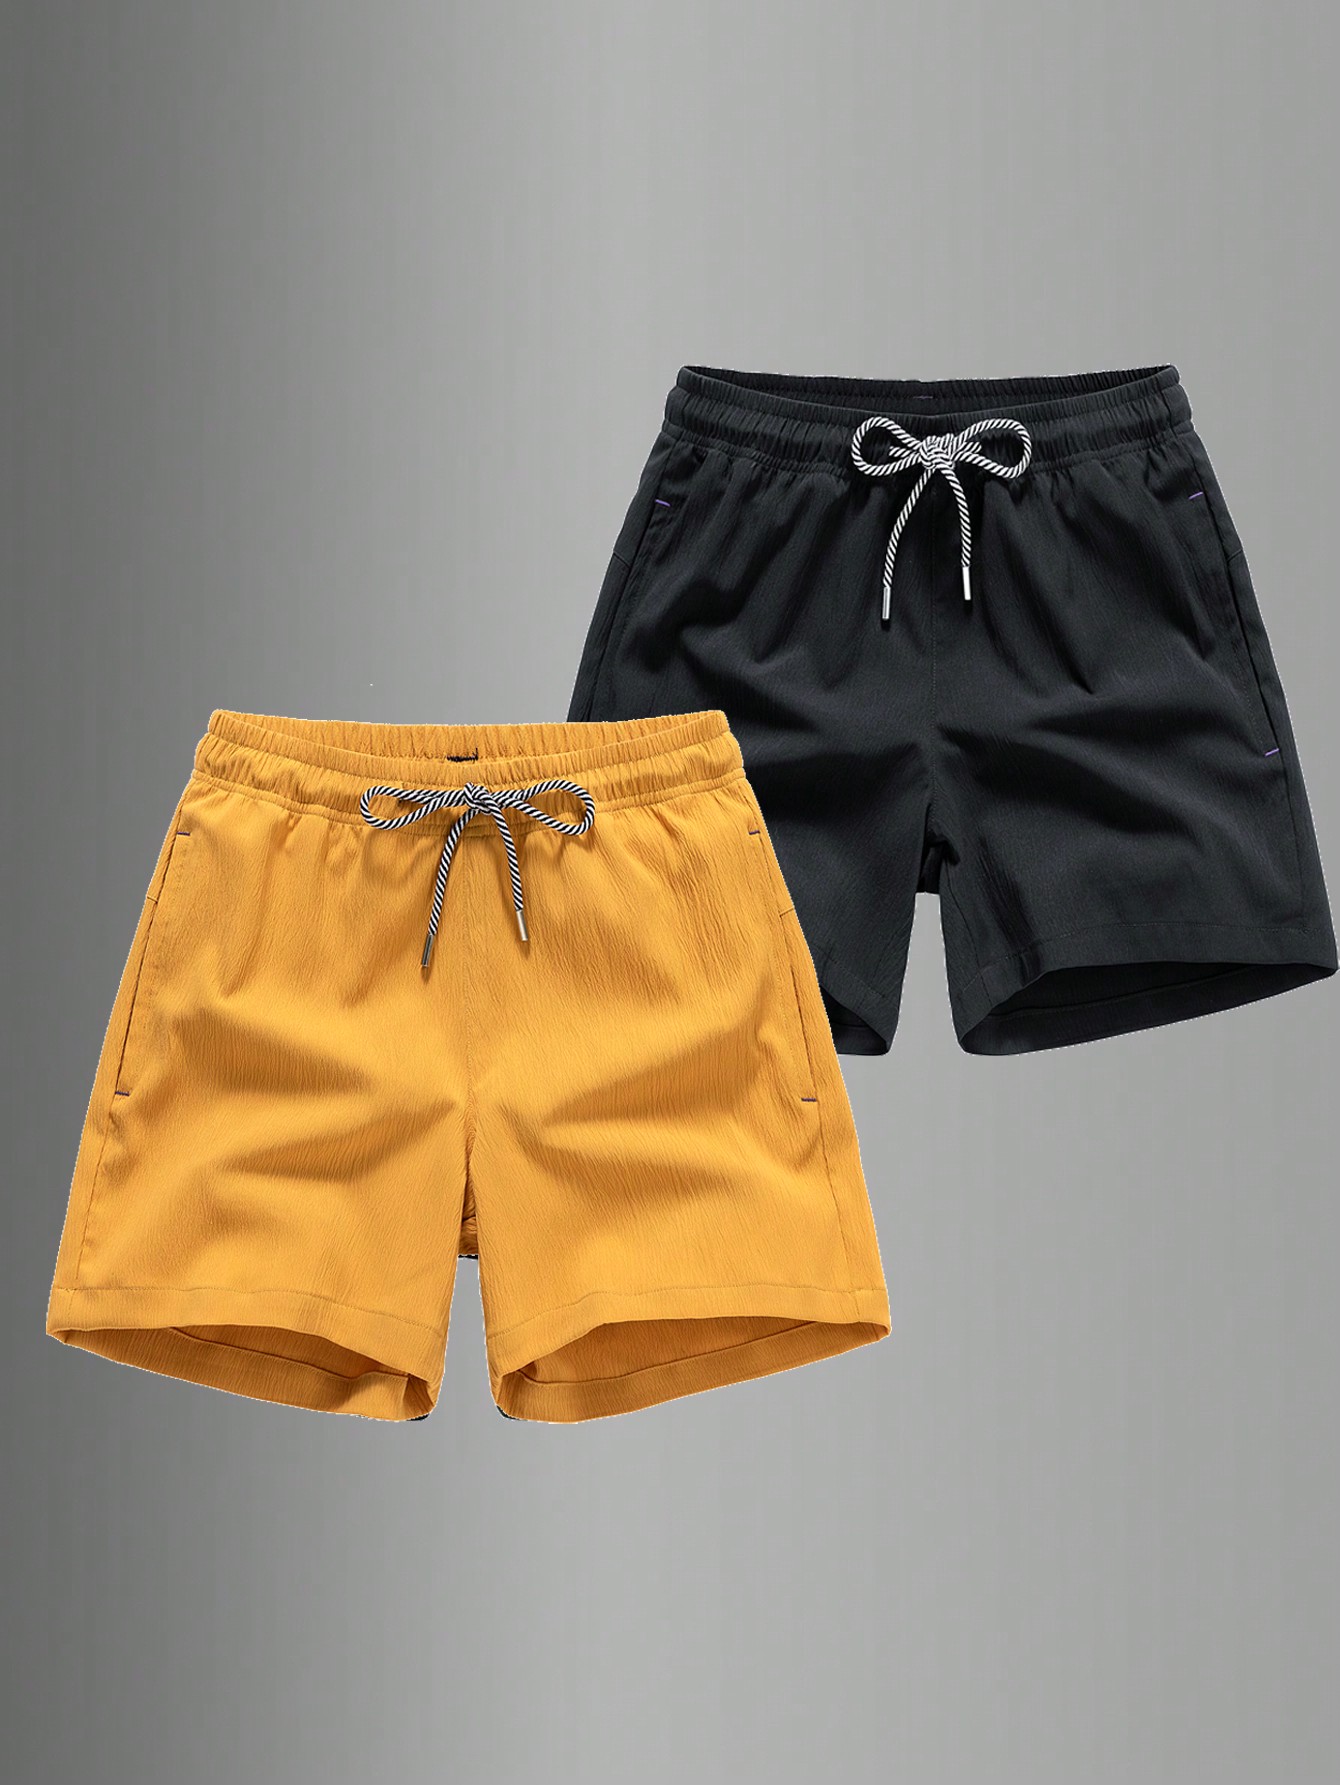 Мужские быстросохнущие спортивные шорты с завязками на талии для пляжного отдыха или тренировок, черный